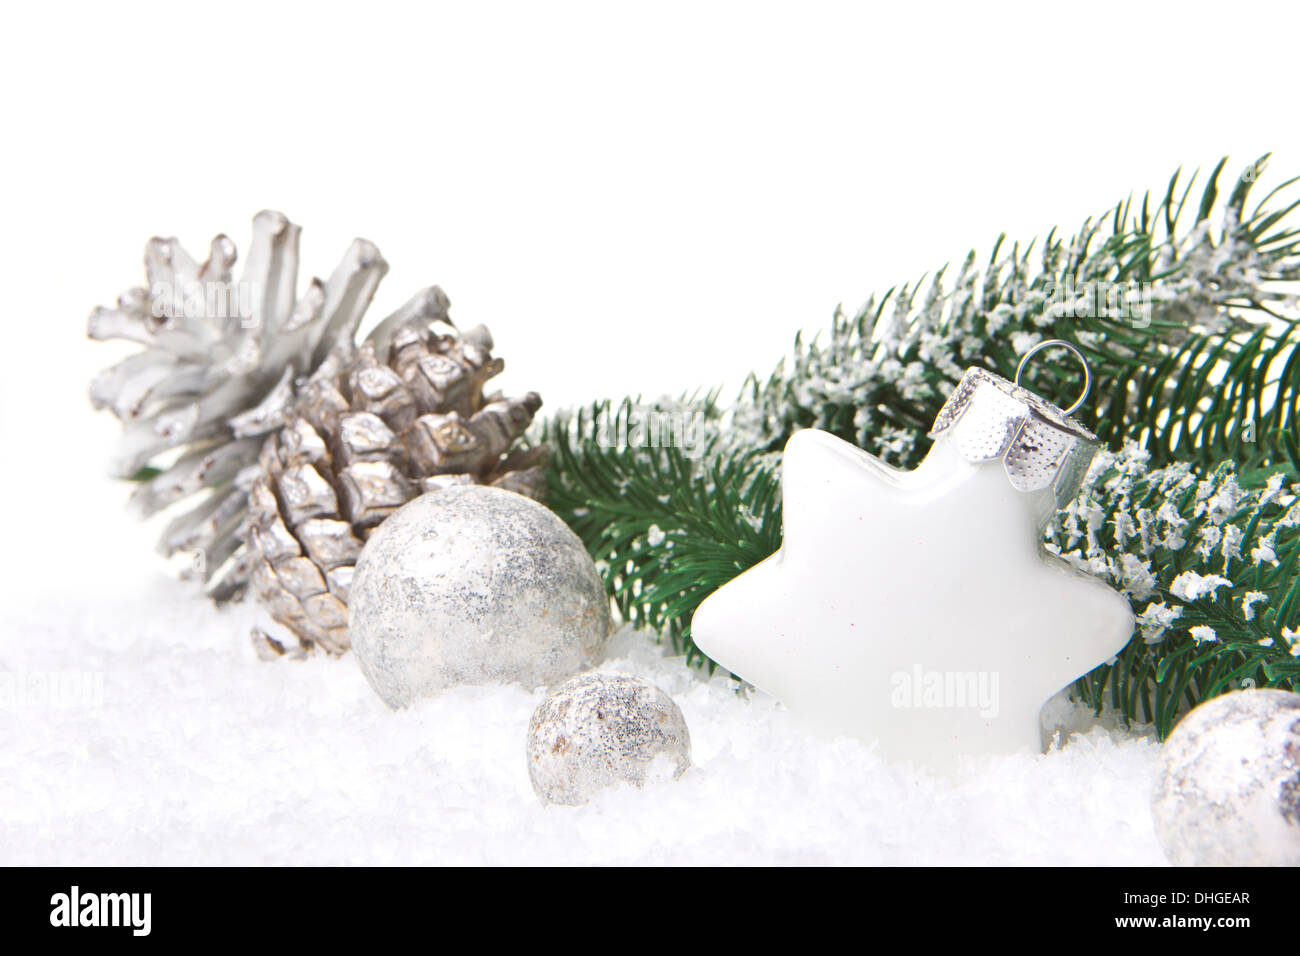 Navidad, decoración con rama de abeto, piñas, adornos de navidad en blanco y plata Foto de stock